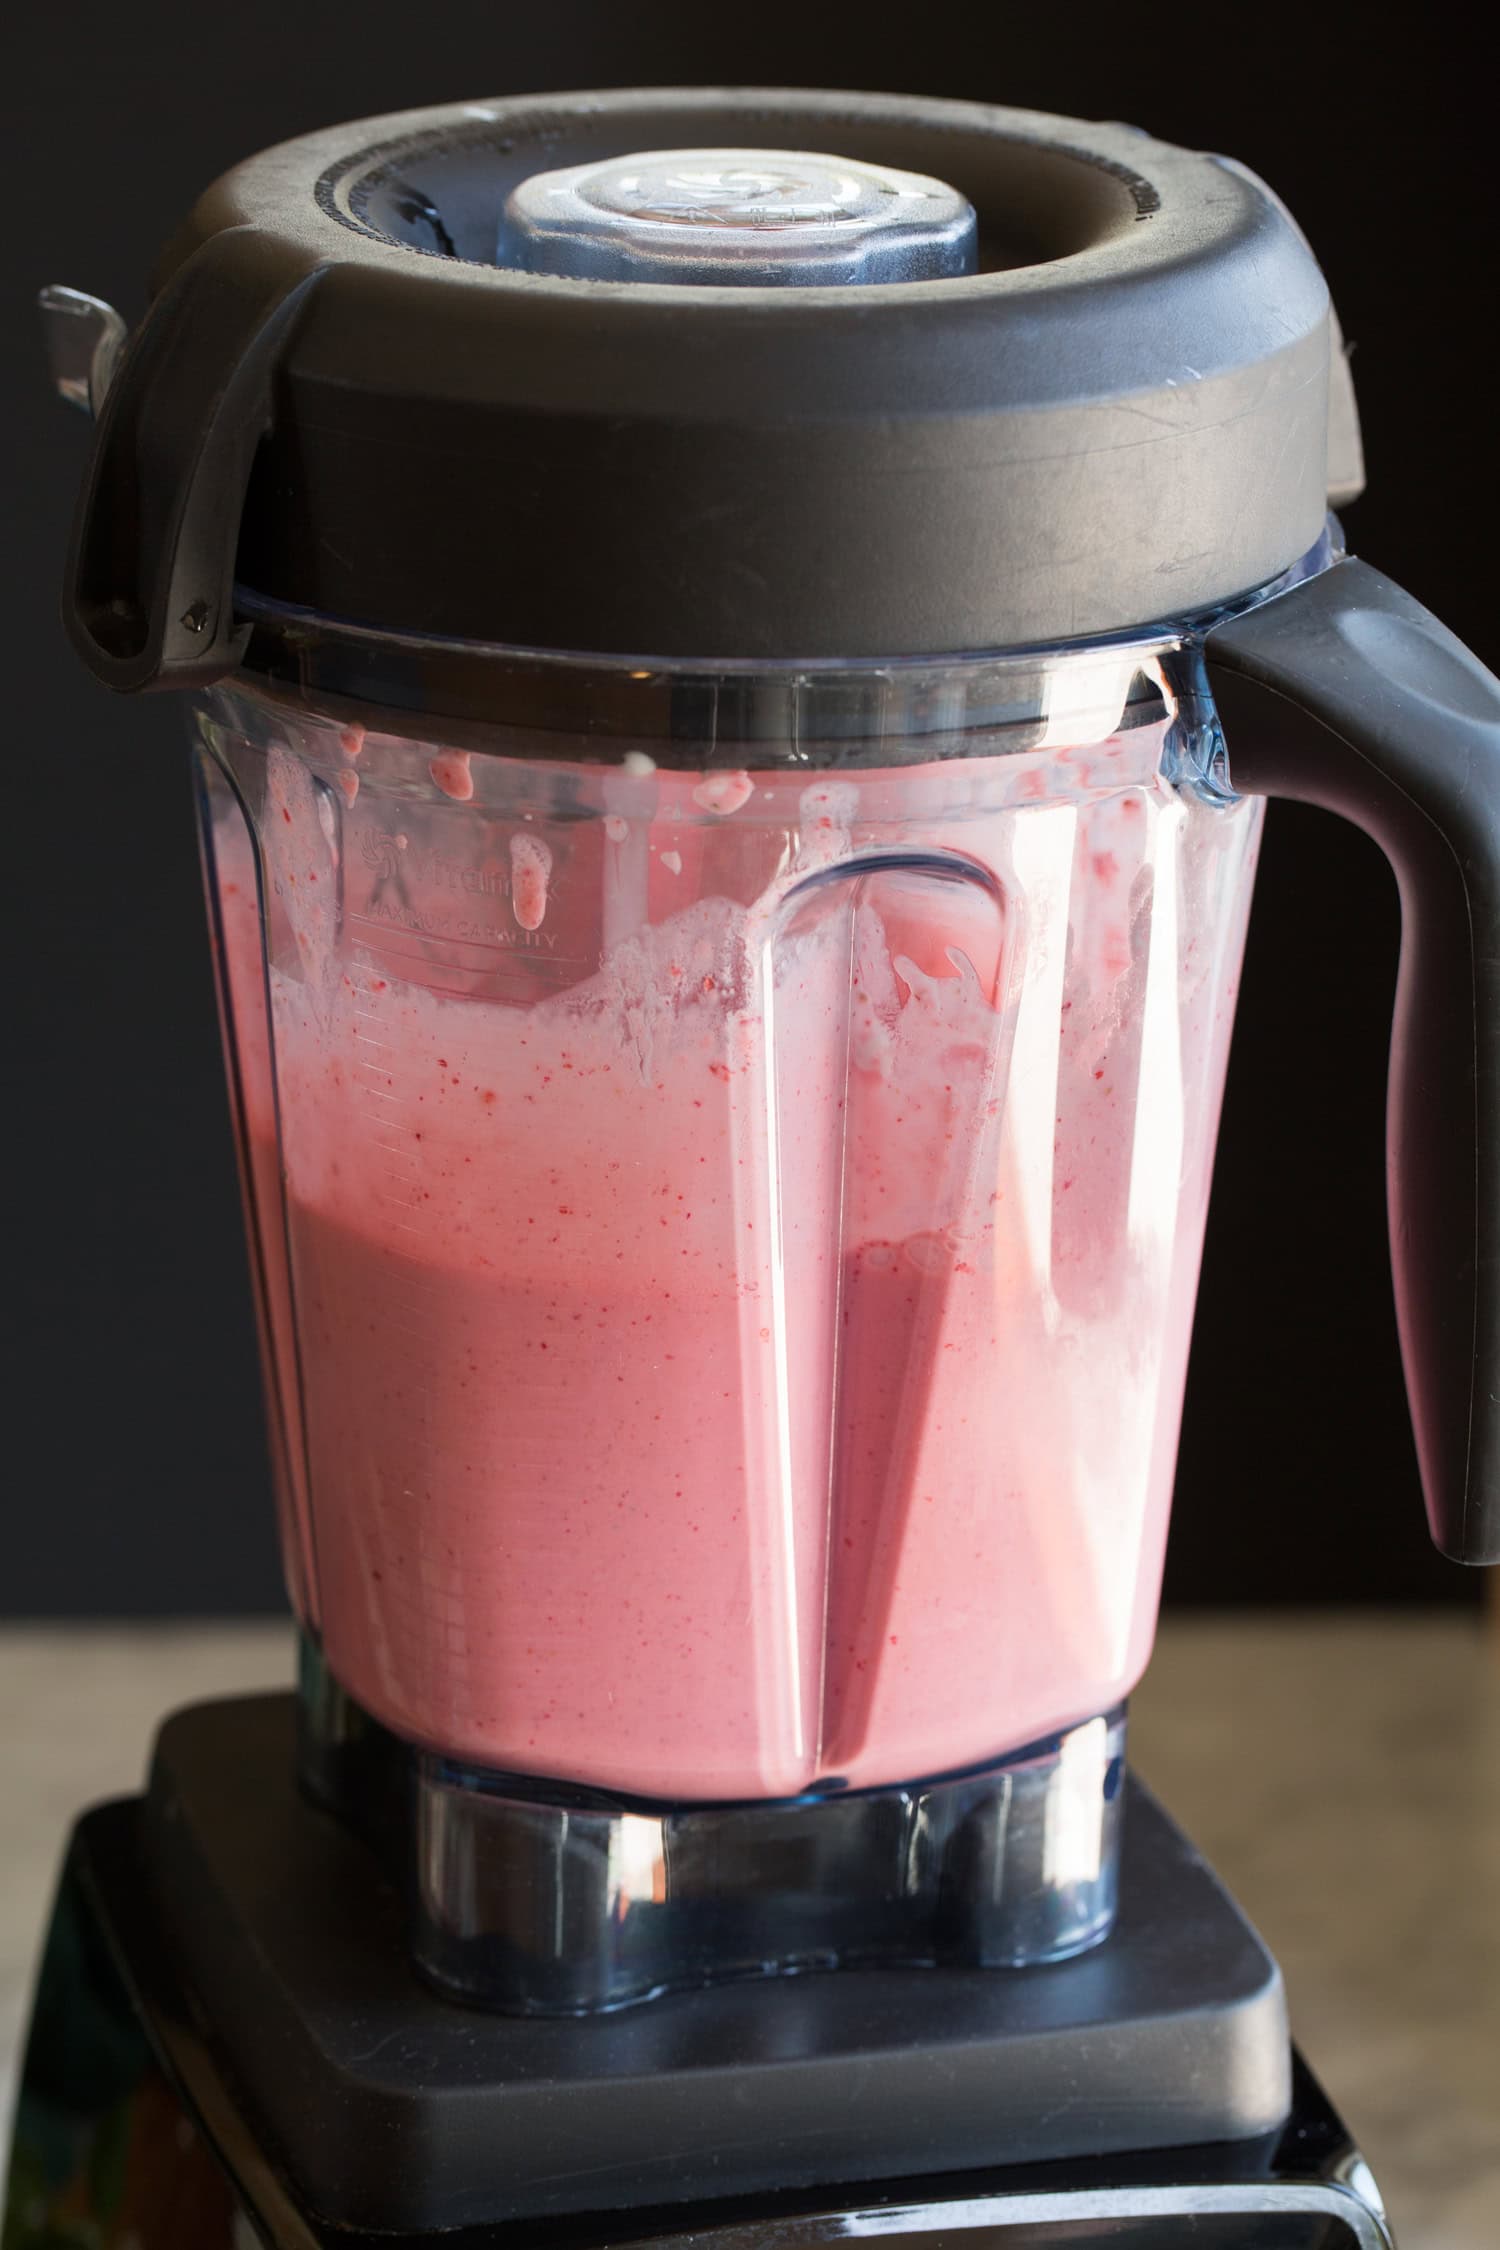 Blended strawberry milkshake in a blender.